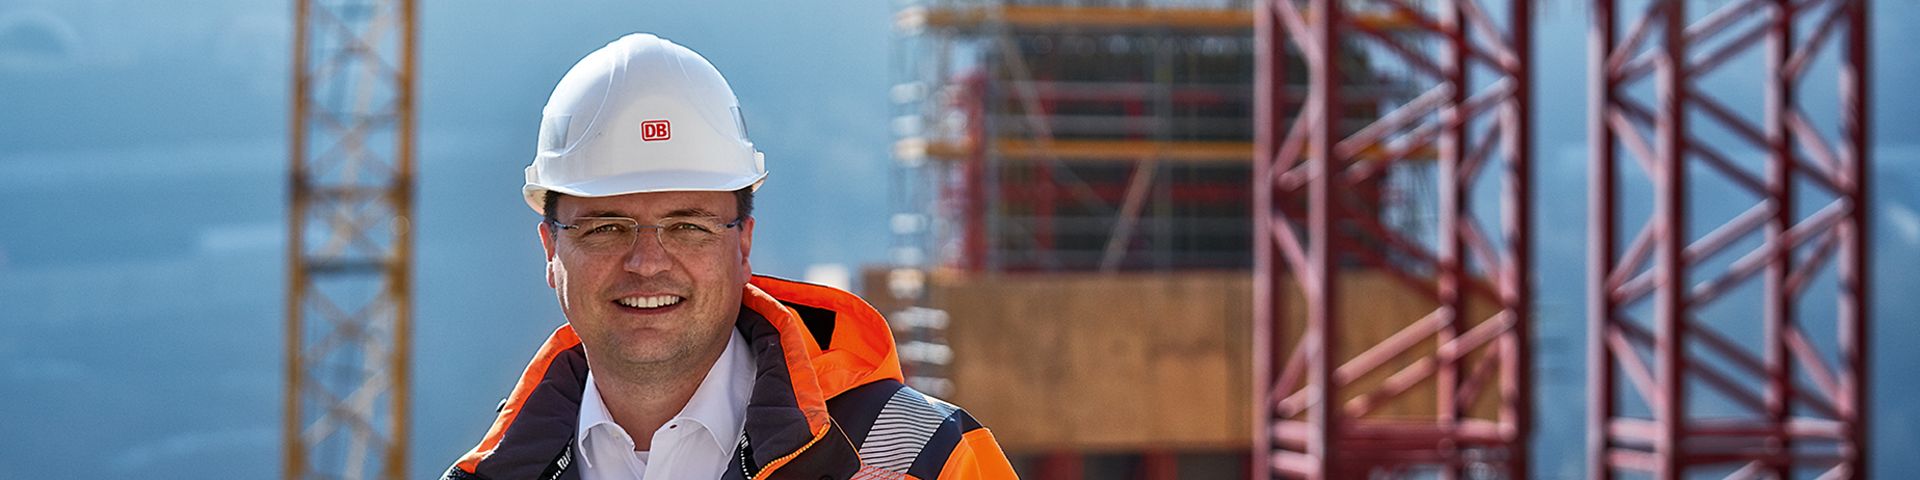 Ein Bauingenieur steht in Warnkleidung und mit Schutzhelm vor einer Baustelle